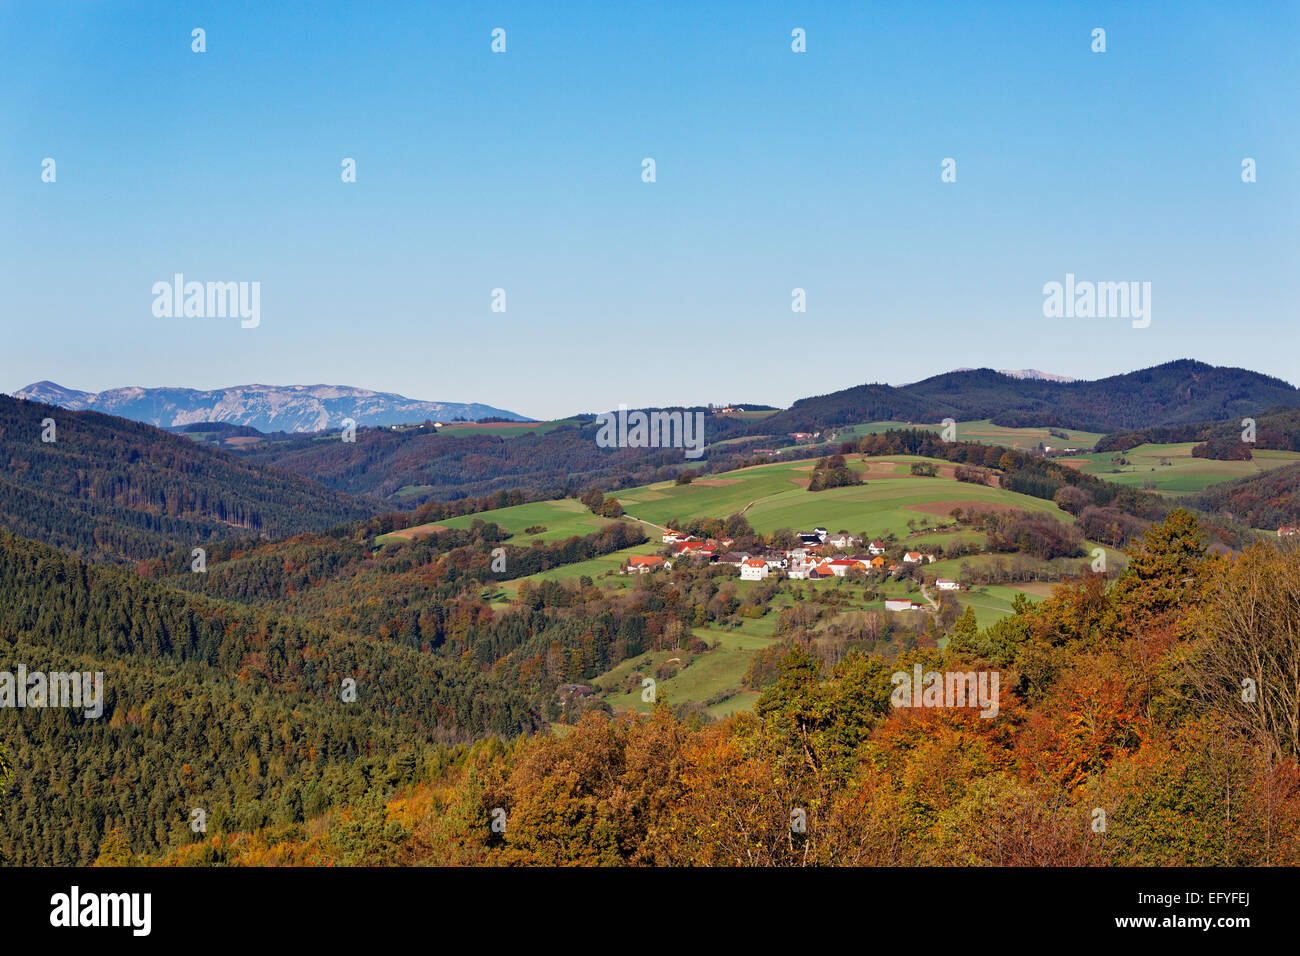 Village of Spratzeck, Bucklige Welt region, Lower Austria, as seen from Landsee, Burgenland, Austria Stock Photo